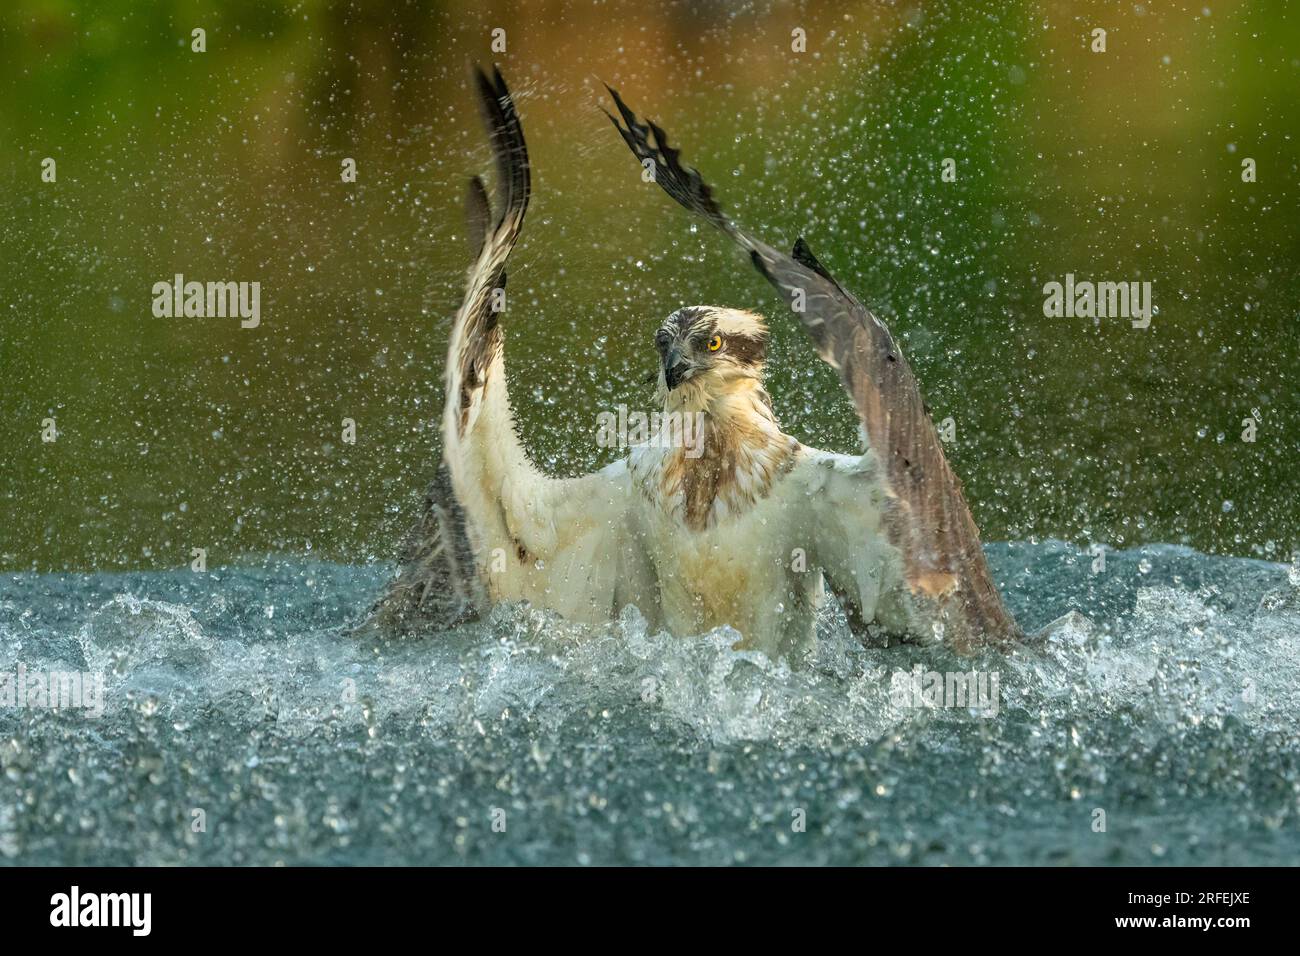 La danza del falco. Bourne, Inghilterra: LE SPLENDIDE immagini scattate a Bourne mostrano un esperto falco pescatore che fa una bella immersione e cattura il suo pasto del giorno Foto Stock